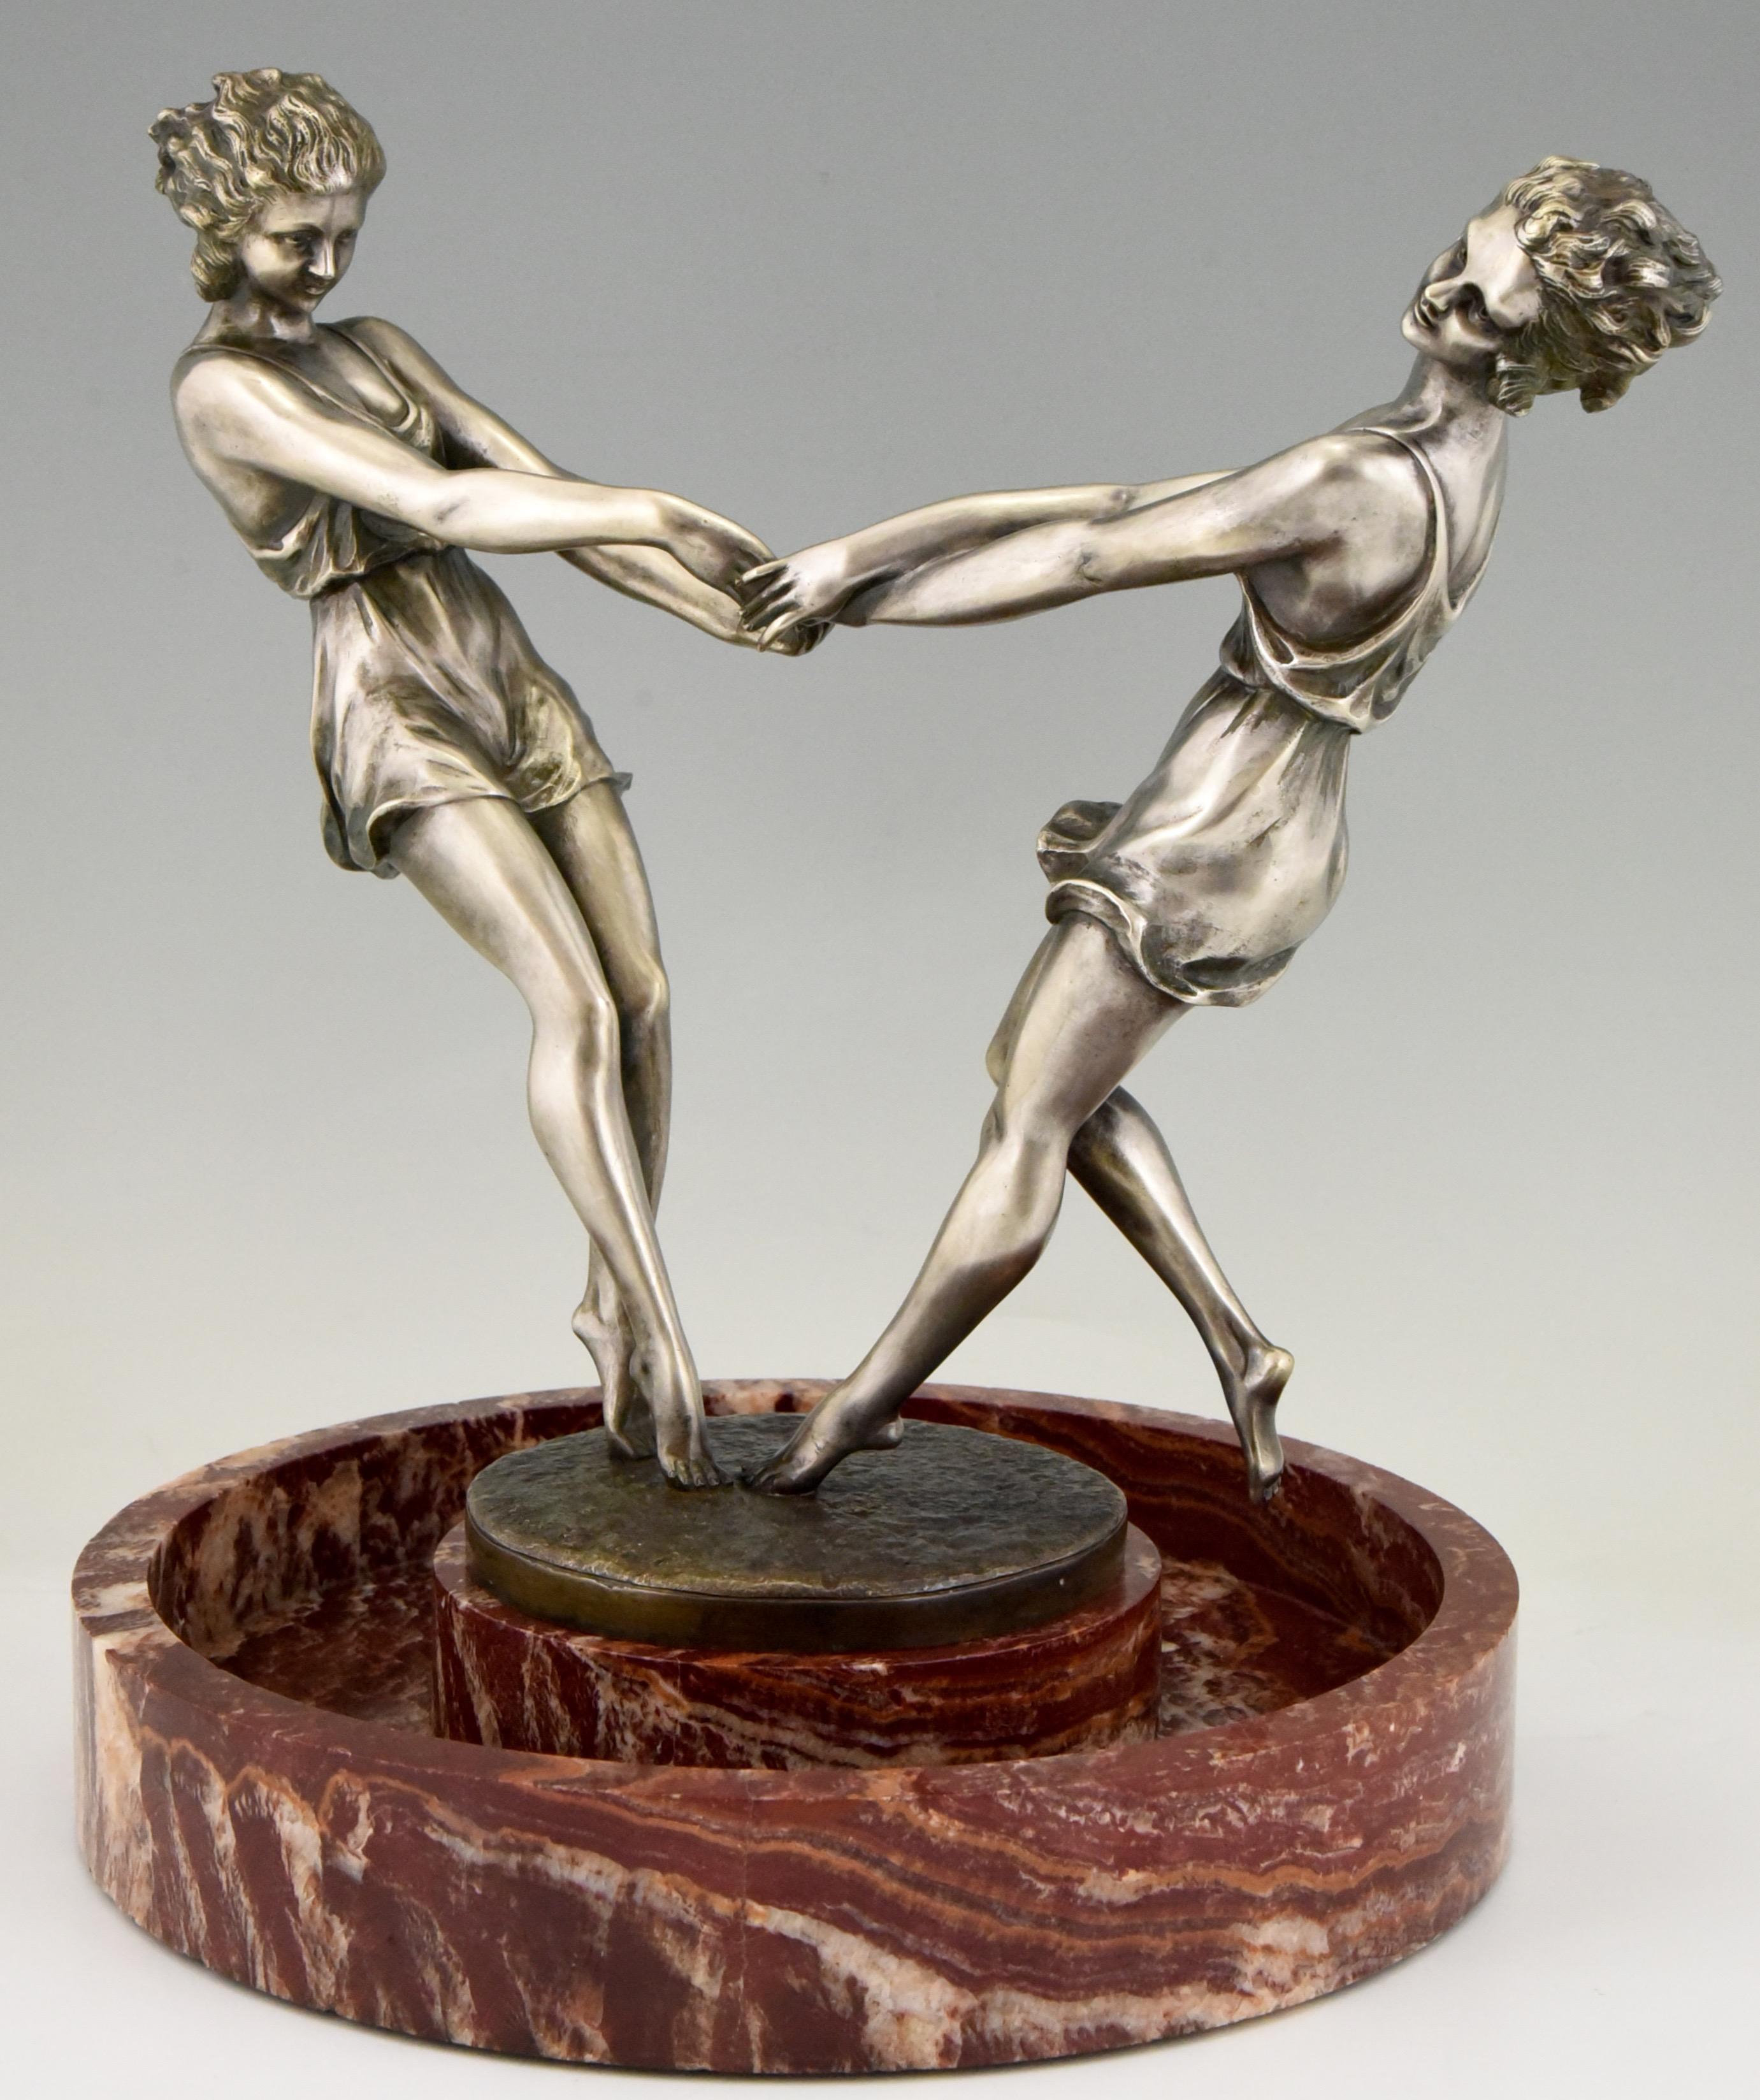 Centre de table circulaire en marbre, tourbillonnant et spectaculaire, avec une sculpture en bronze de deux danseuses se tenant par la main, réalisée par l'artiste français Andre Gilbert, vers 1925.
Le bronze a une patine argentée.

Ce modèle est